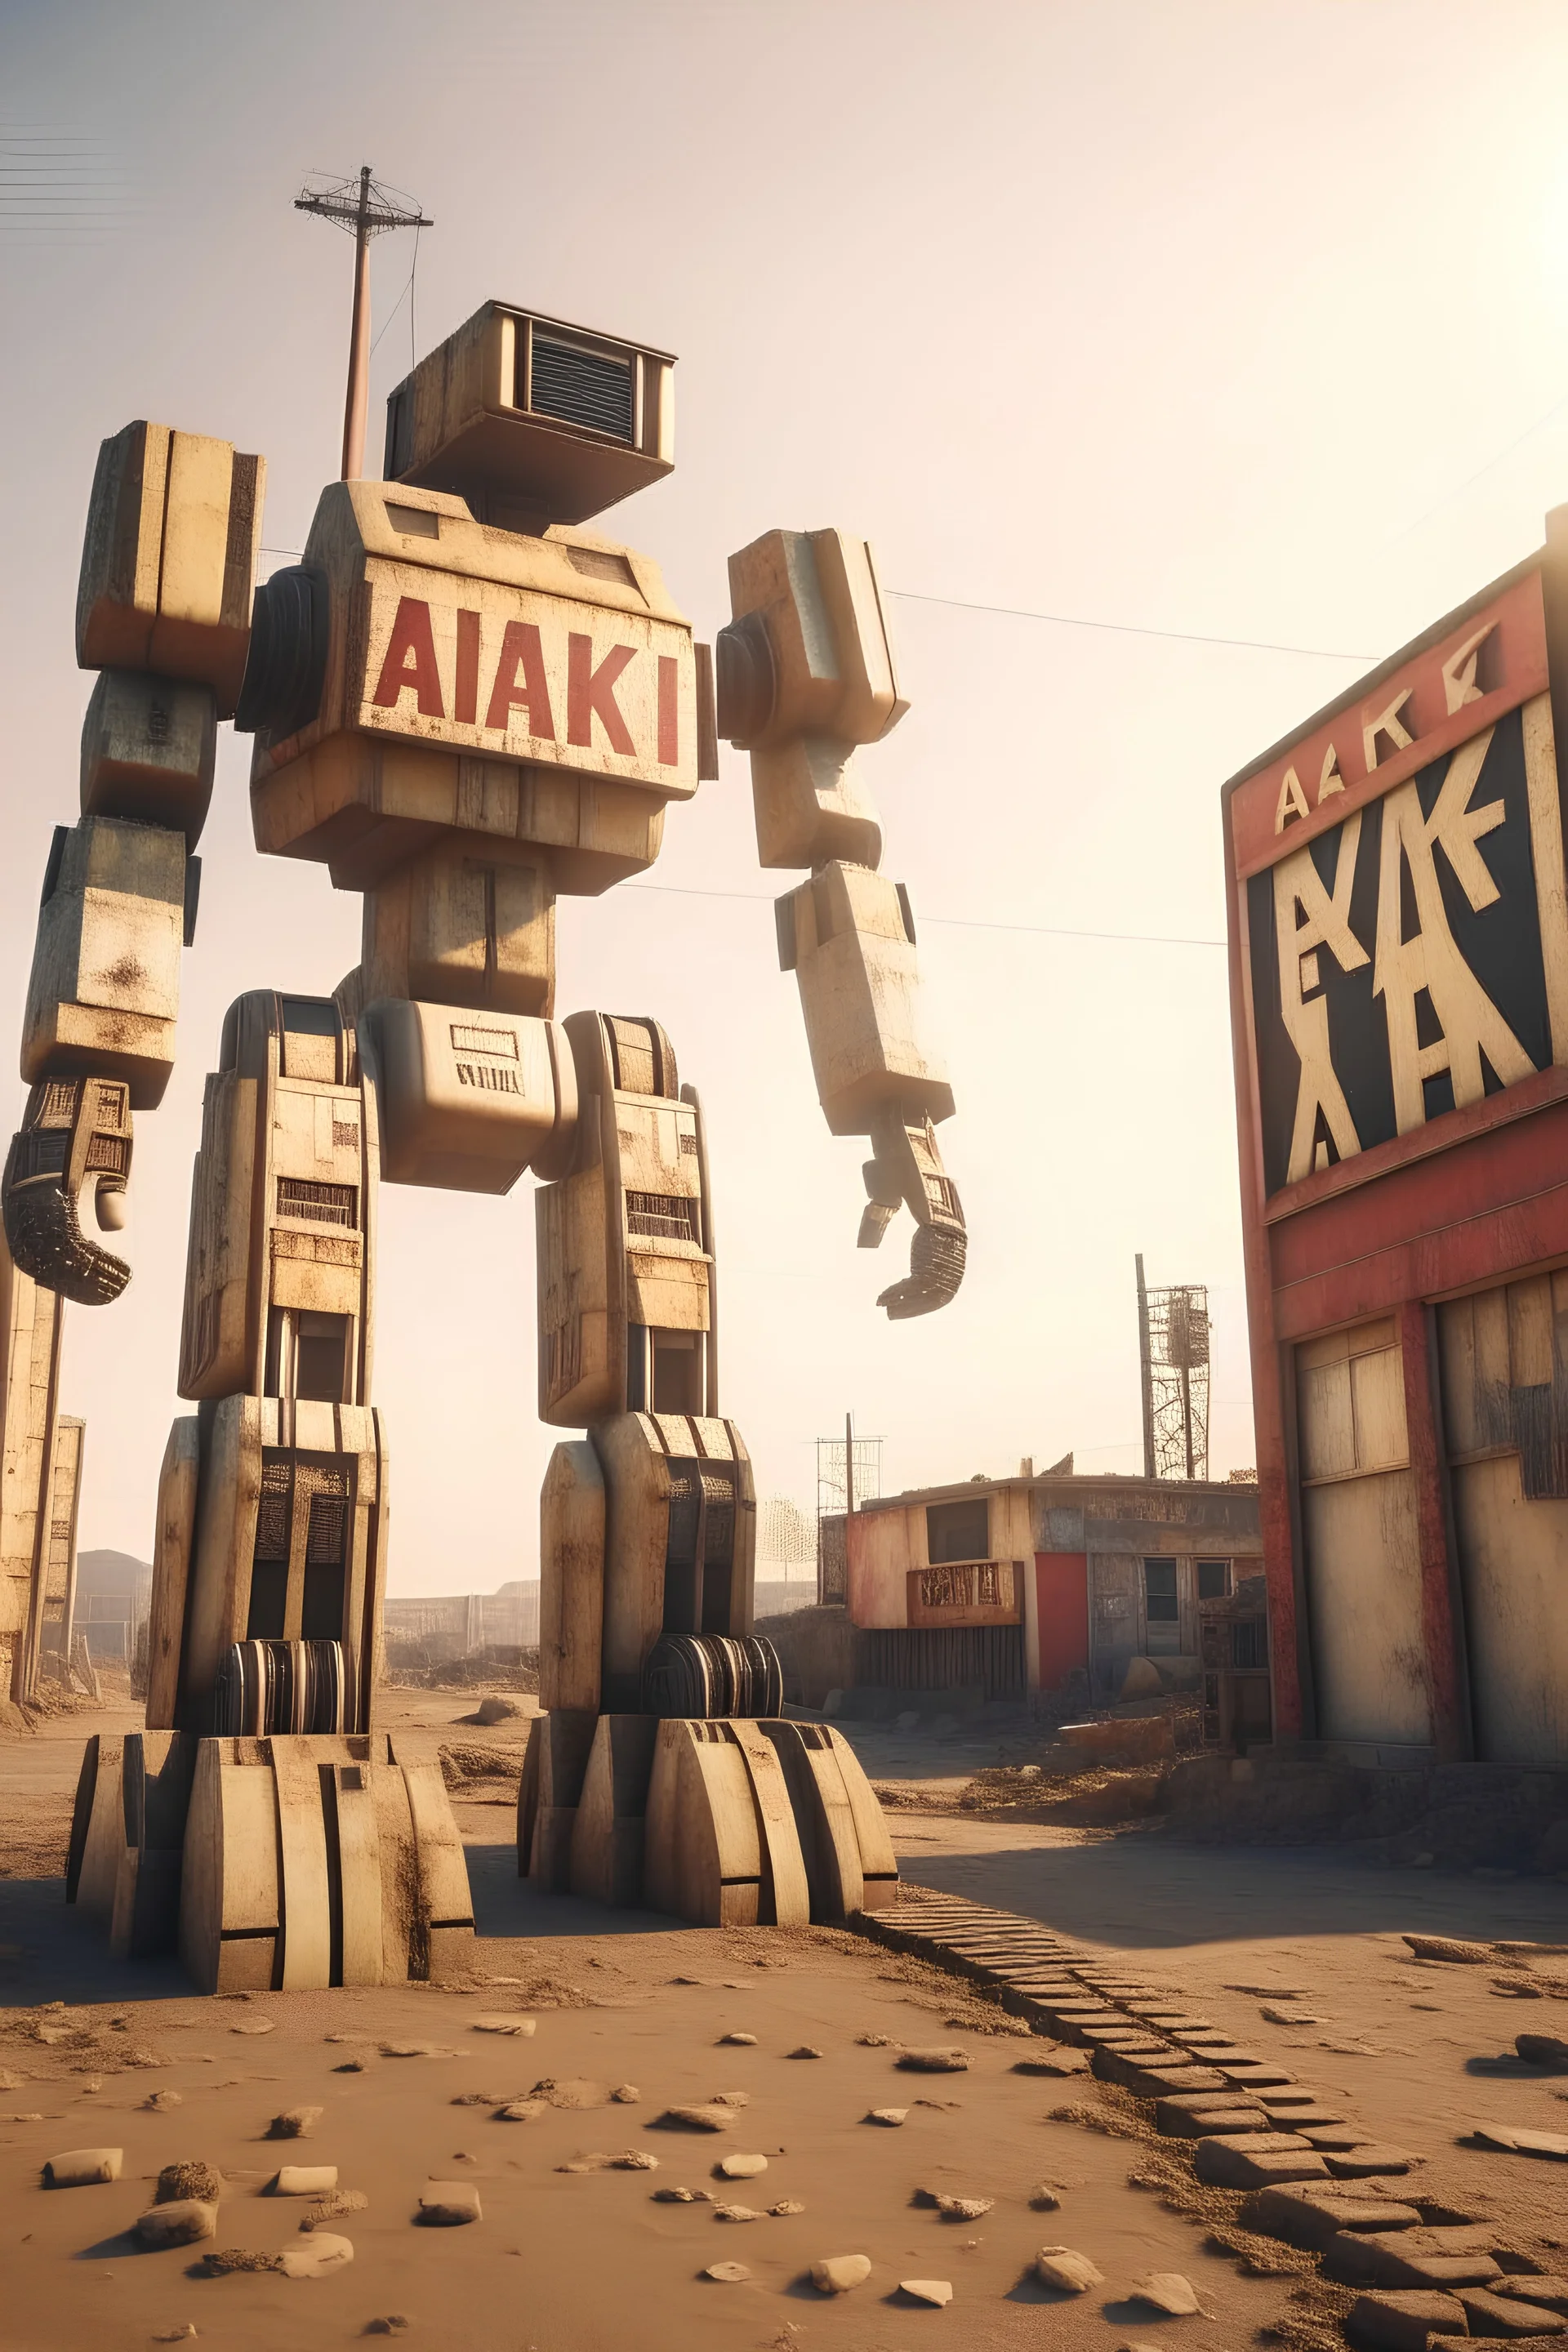 robot gigante in una città abbandonata post nucleare con una insegna luminosa vicino con scritto "AKEN"